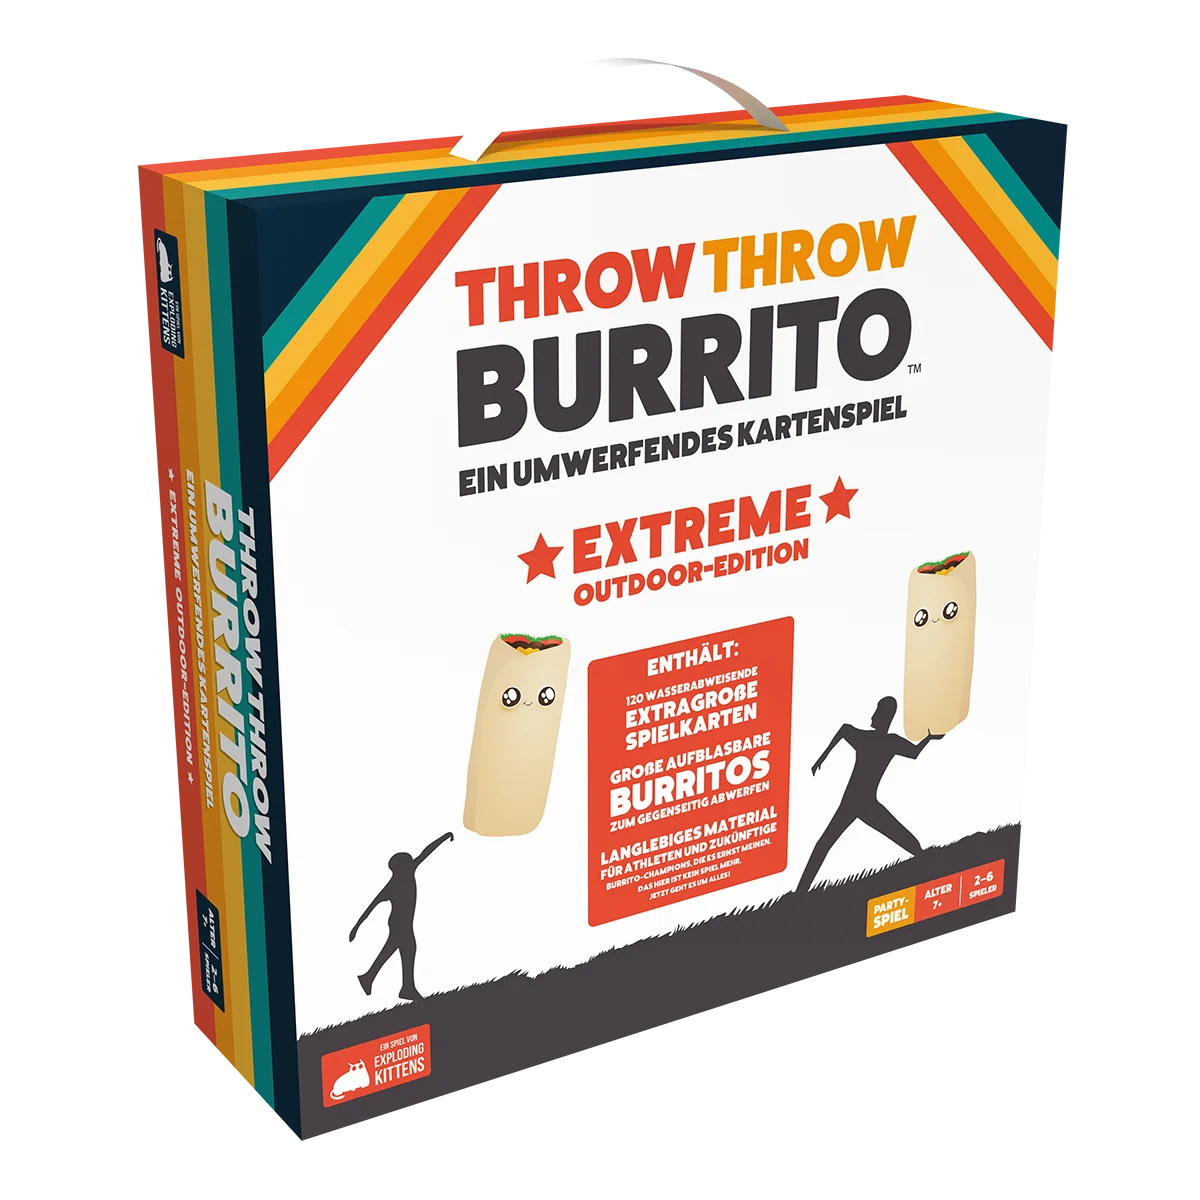 Throw Throw Burrito: Extreme Outdoor-Edition